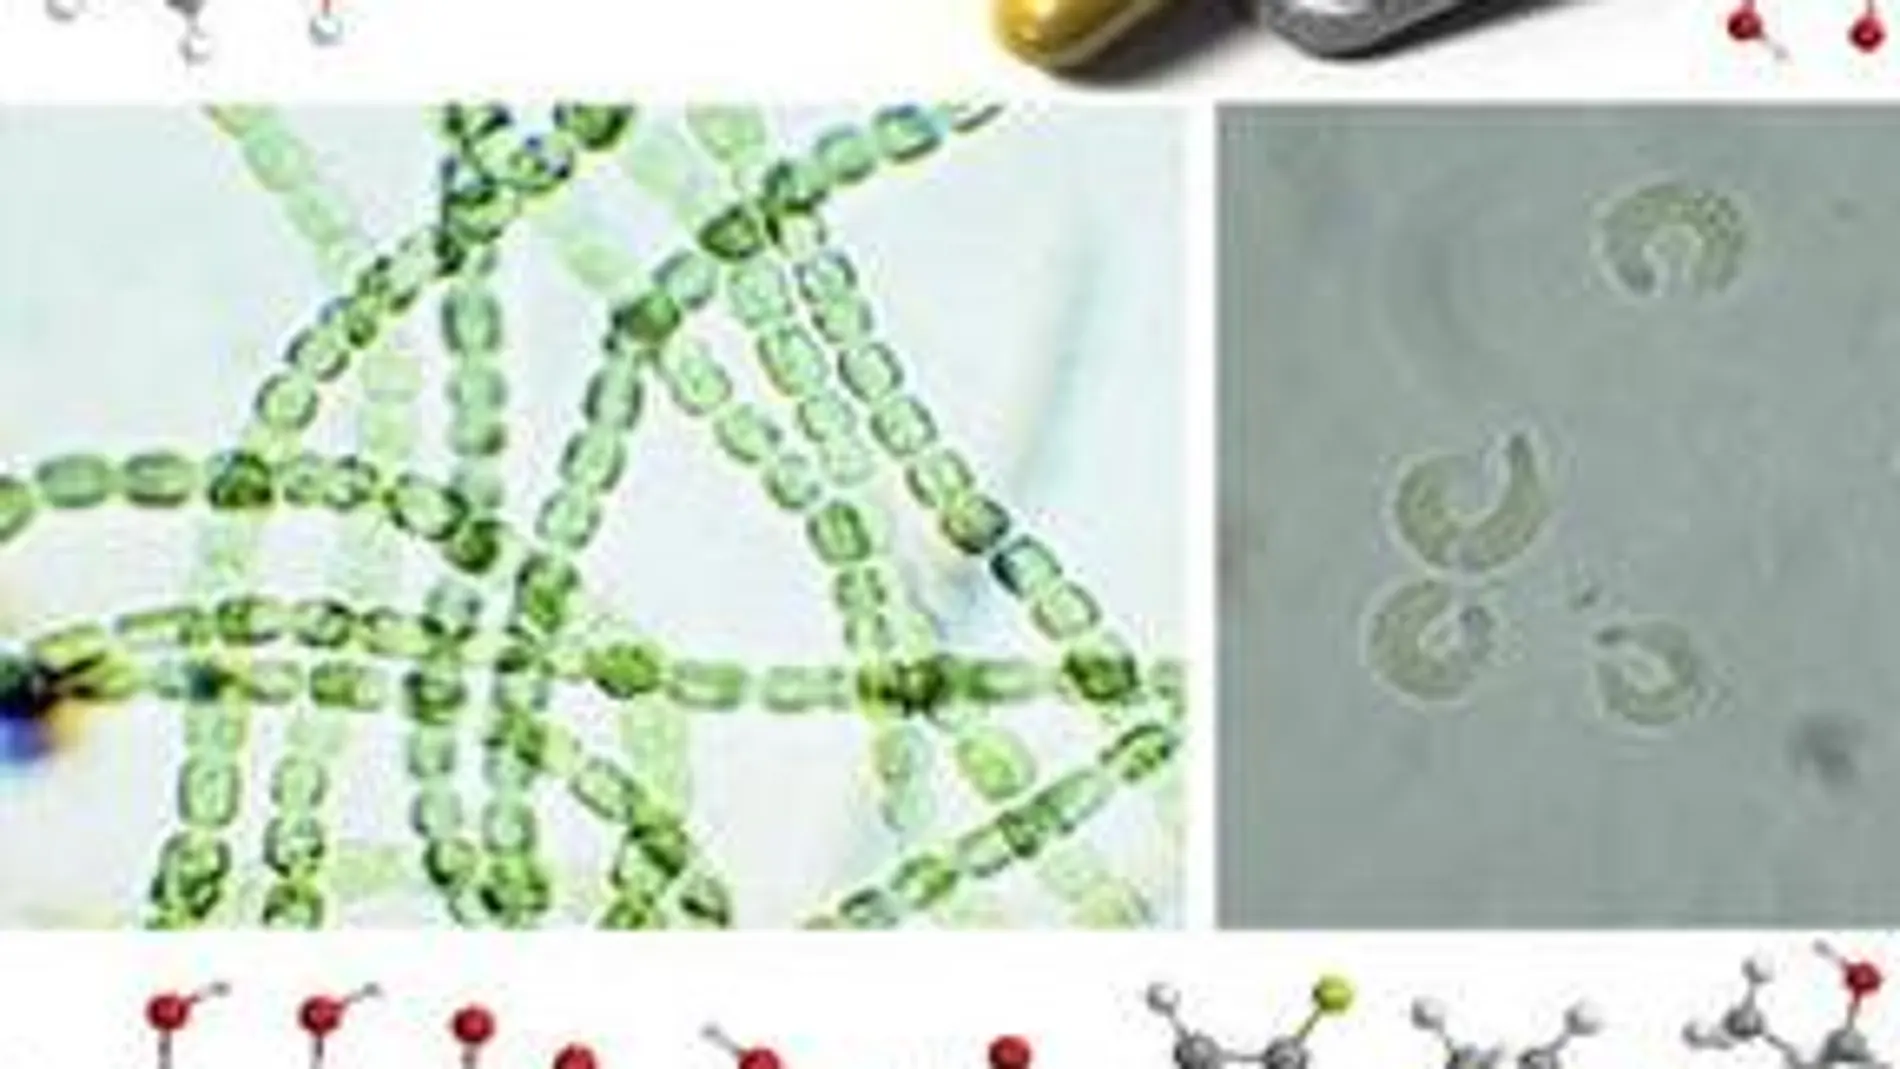 Cianobacteria (izquierda) y algas verdes (derecha) rodeadas de las estructuras moleculares de amoxicilina, norfloxacino, tetraciclina, levofloxacino y eritromicina